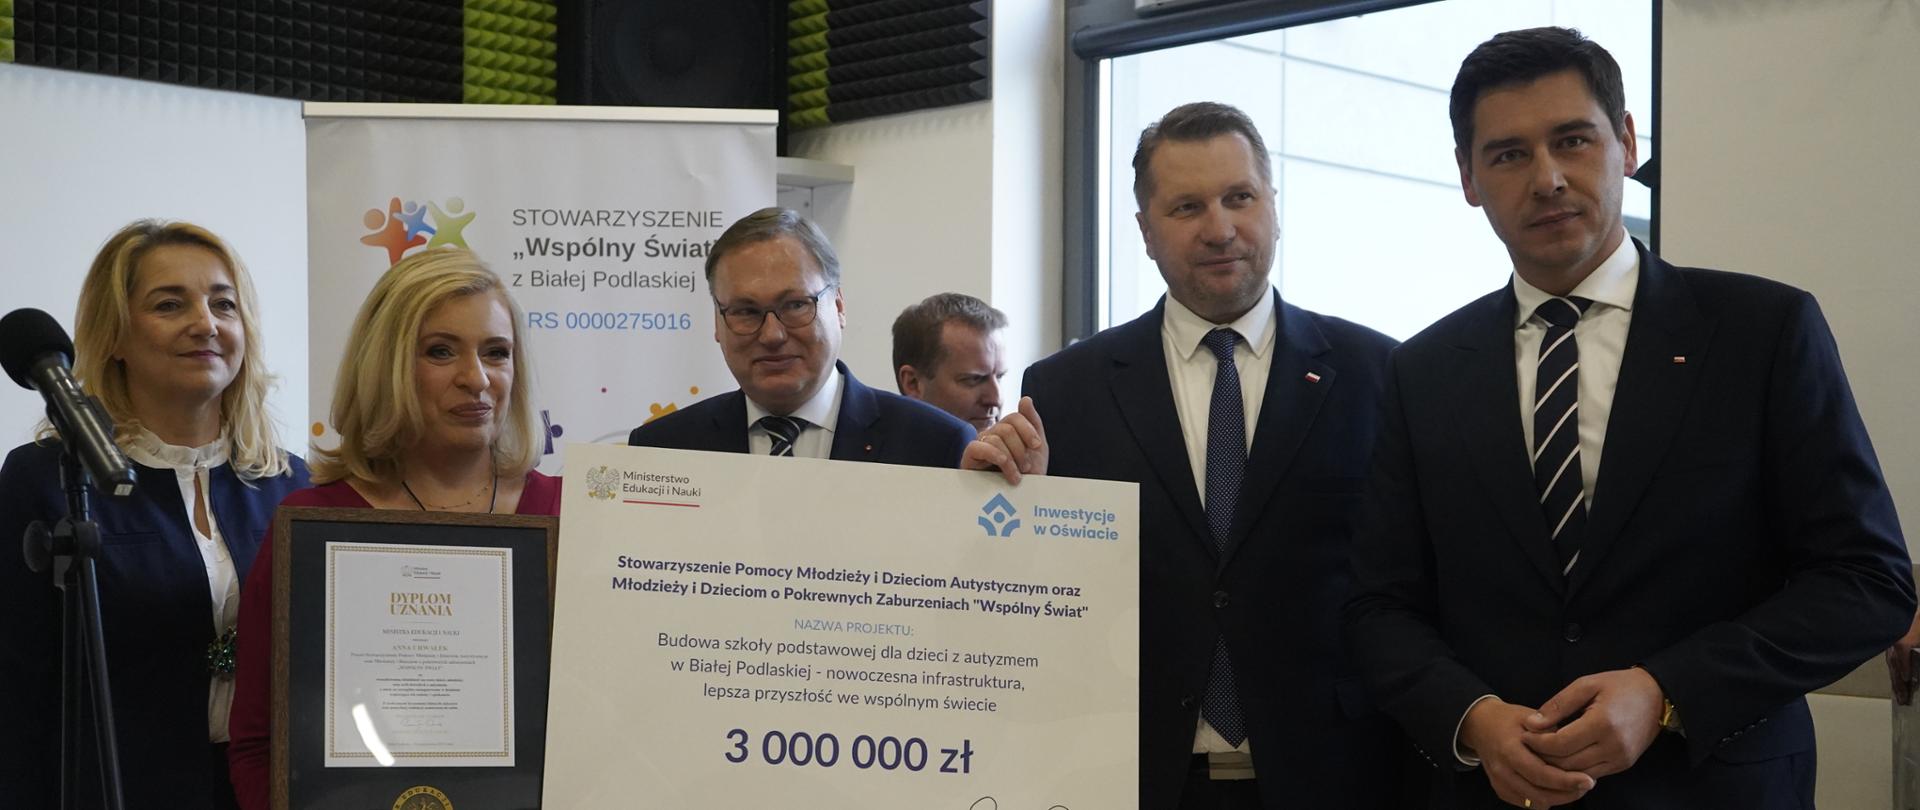 Minister Czarnek stoi w otoczeniu kilku osób, mężczyzna obok niego trzyma wielki symboliczny czek z napisem 3 000 000 zł.